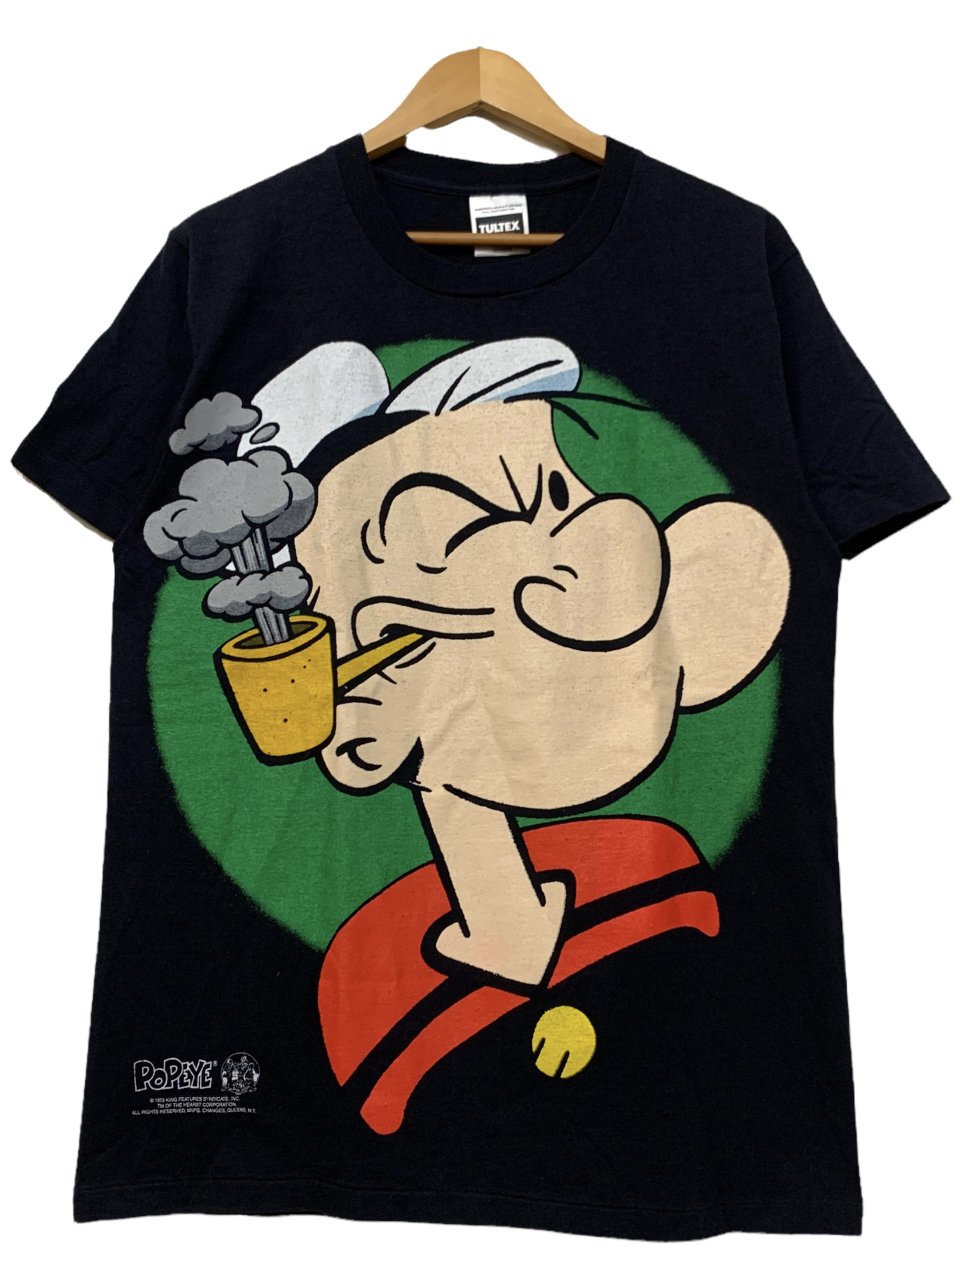 93年 Popeye Over Print S/S Tee 黒 M 90s ポパイ 半袖 Tシャツ 大判